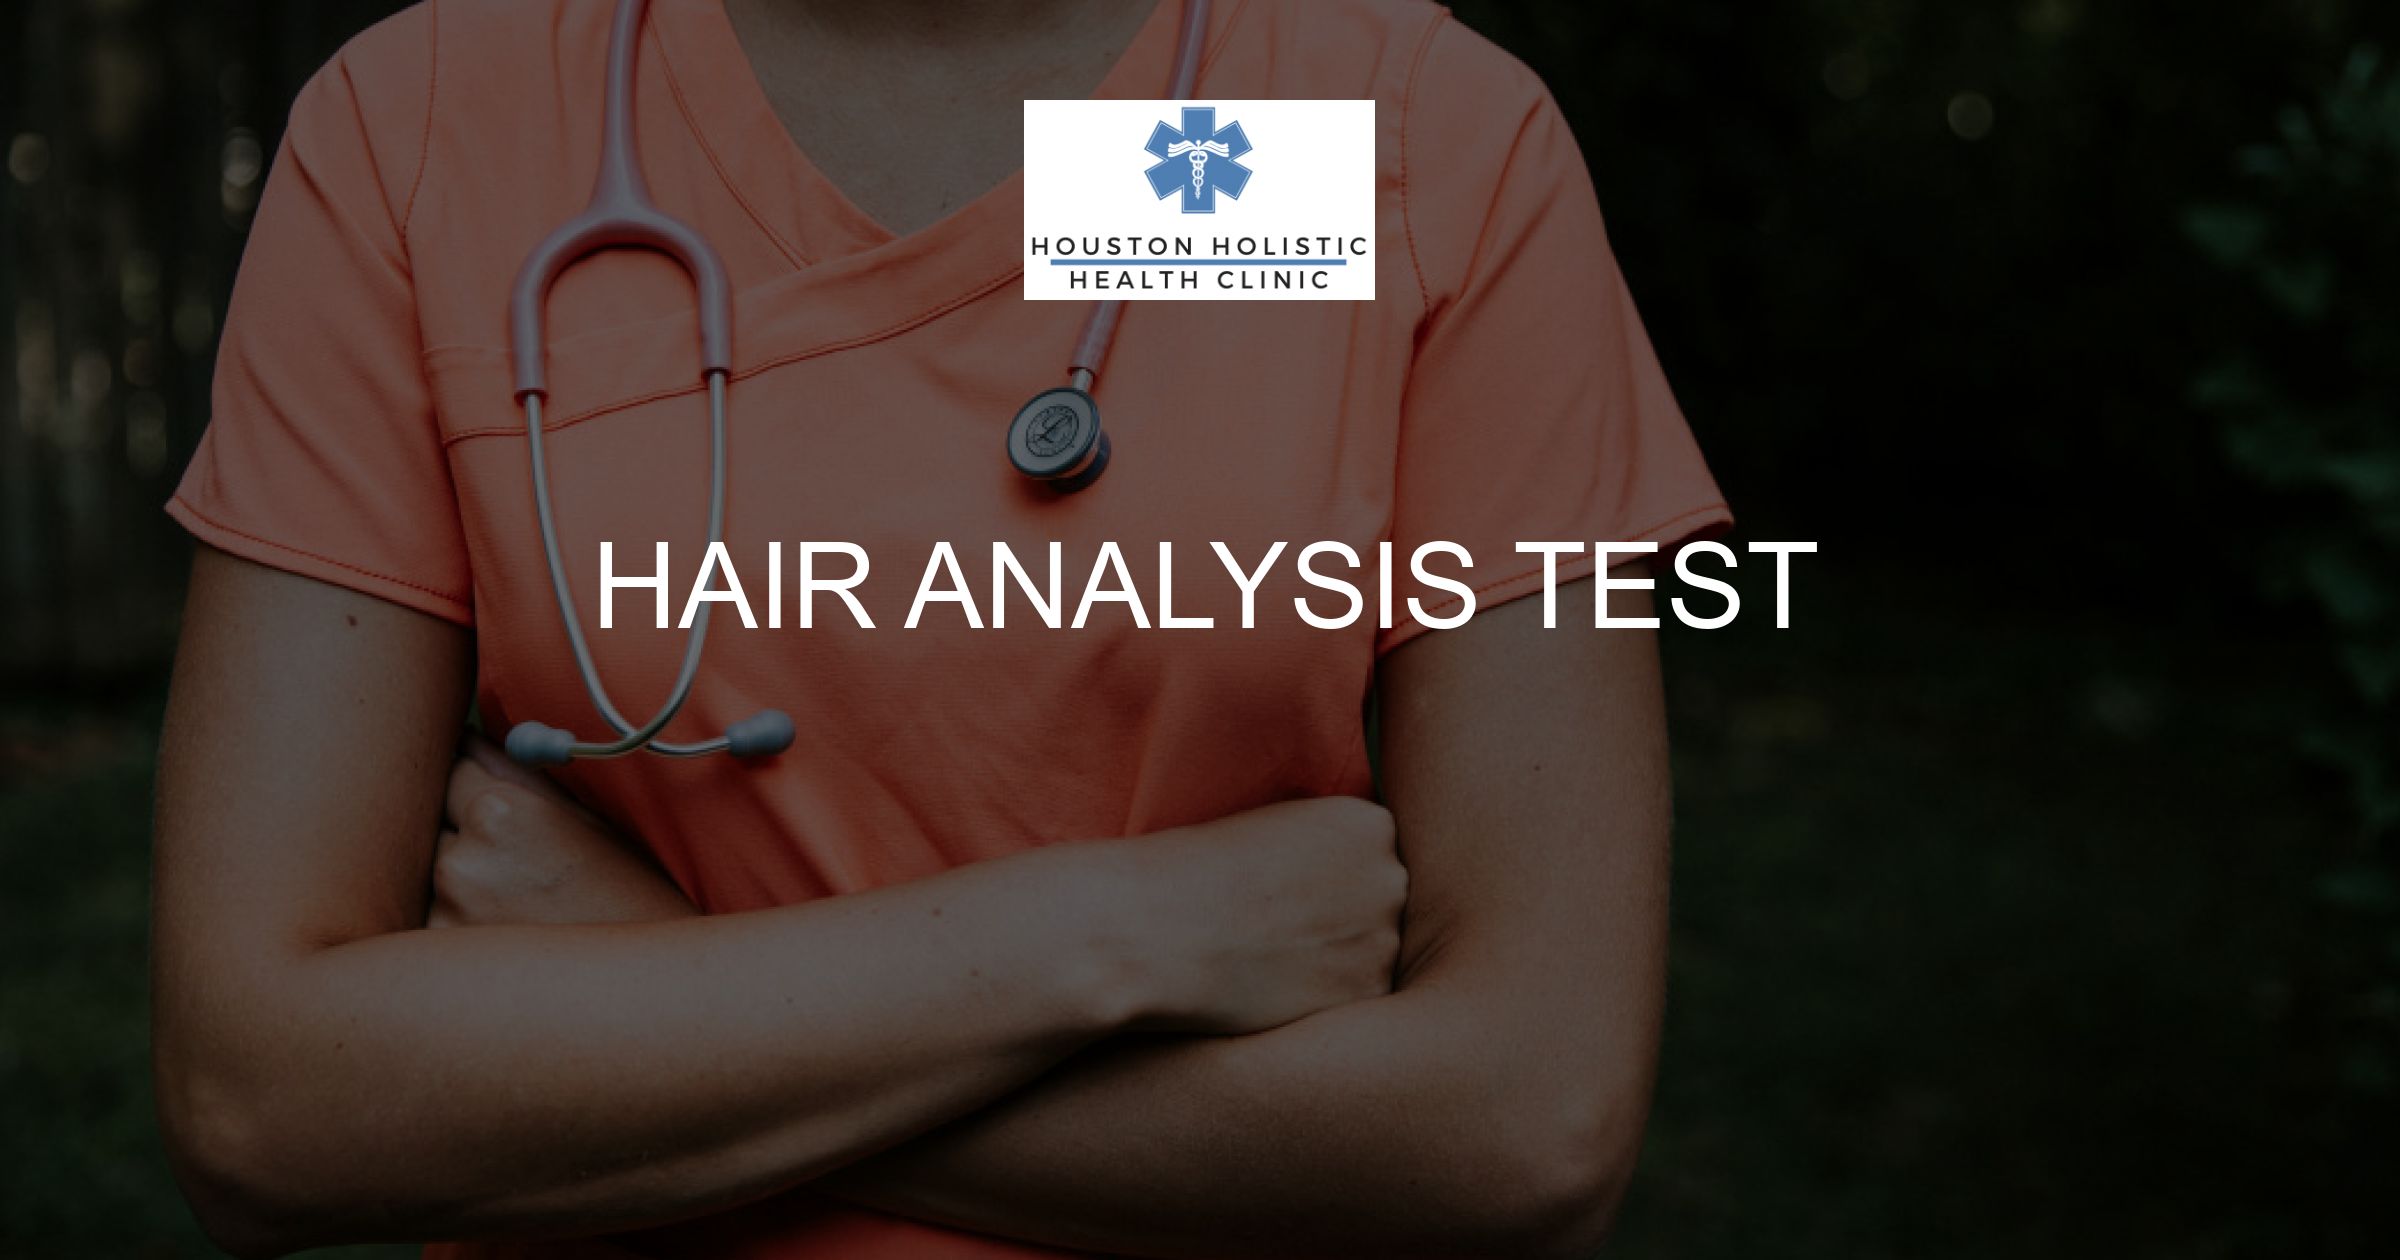 Hair Analysis Test - Houston Holistic Health Clinic